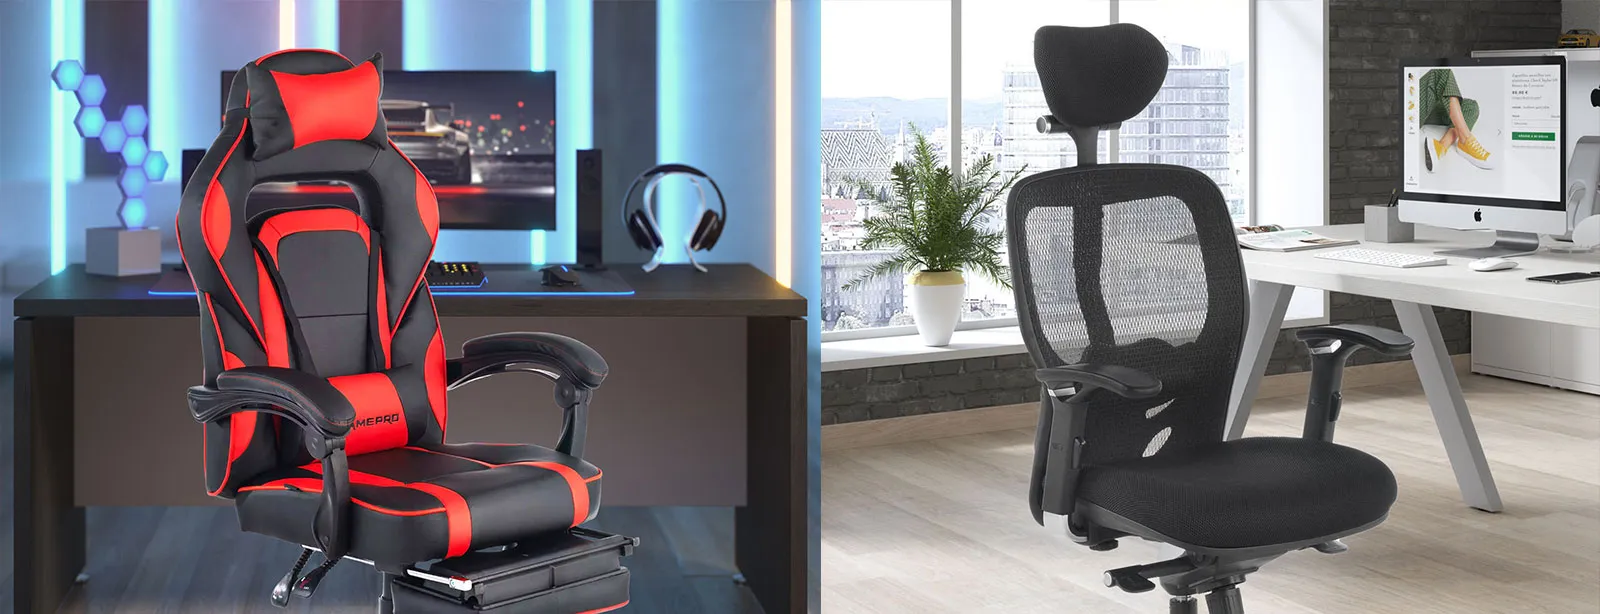 Cadeira gaming vs. cadeira executiva: qual delas escolher?